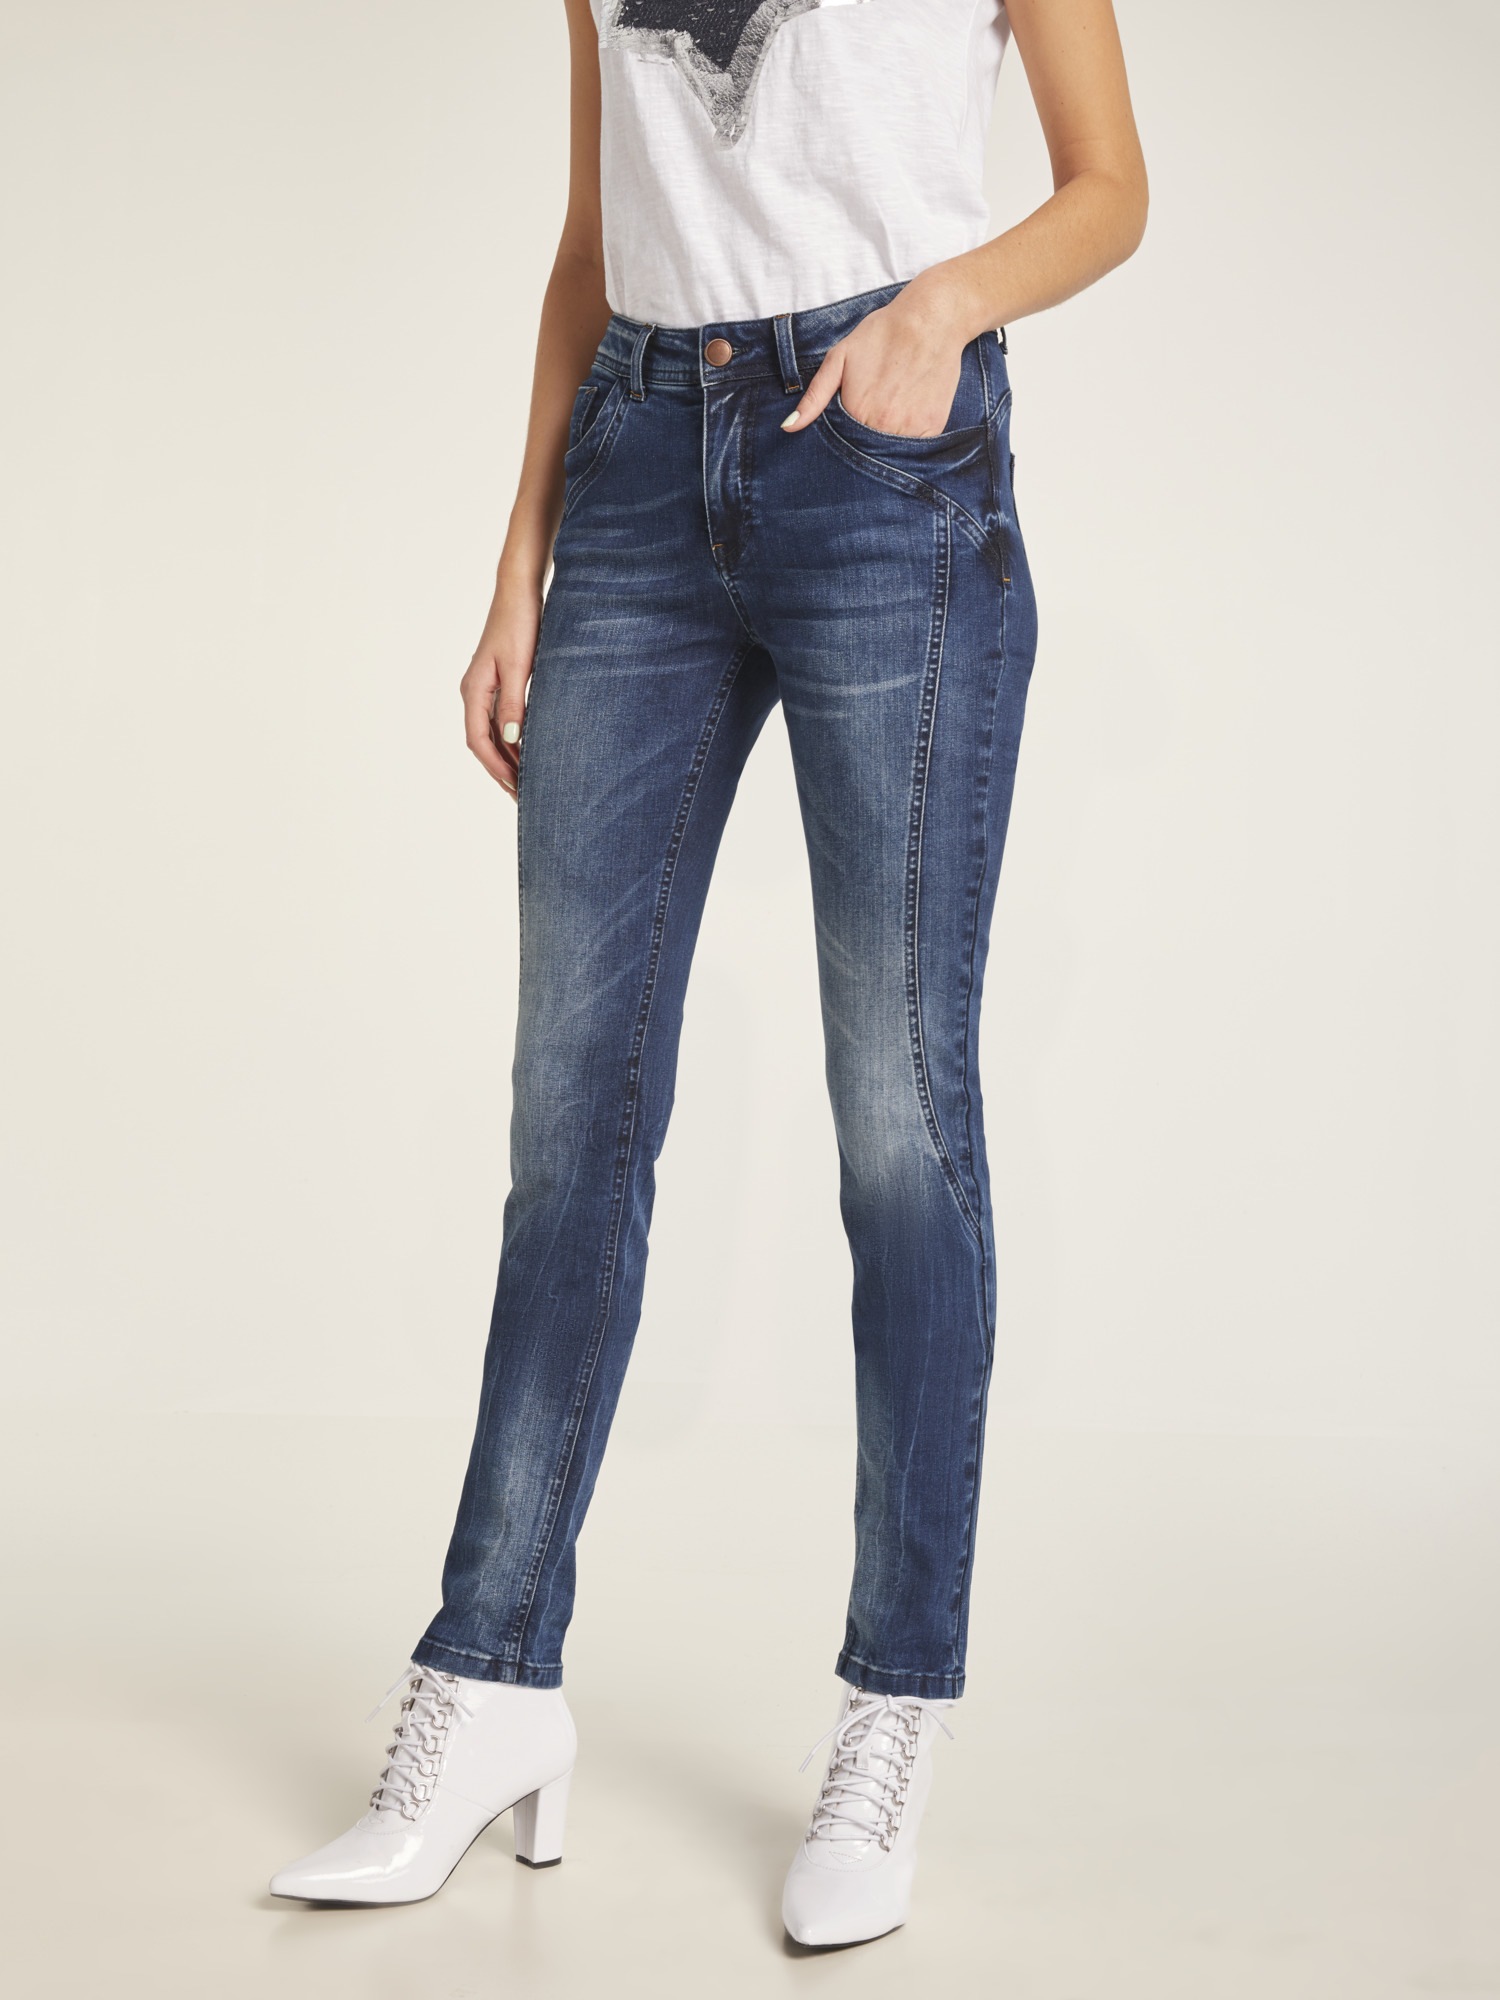 Bauch Weg Jeans Online Bestellen Baur